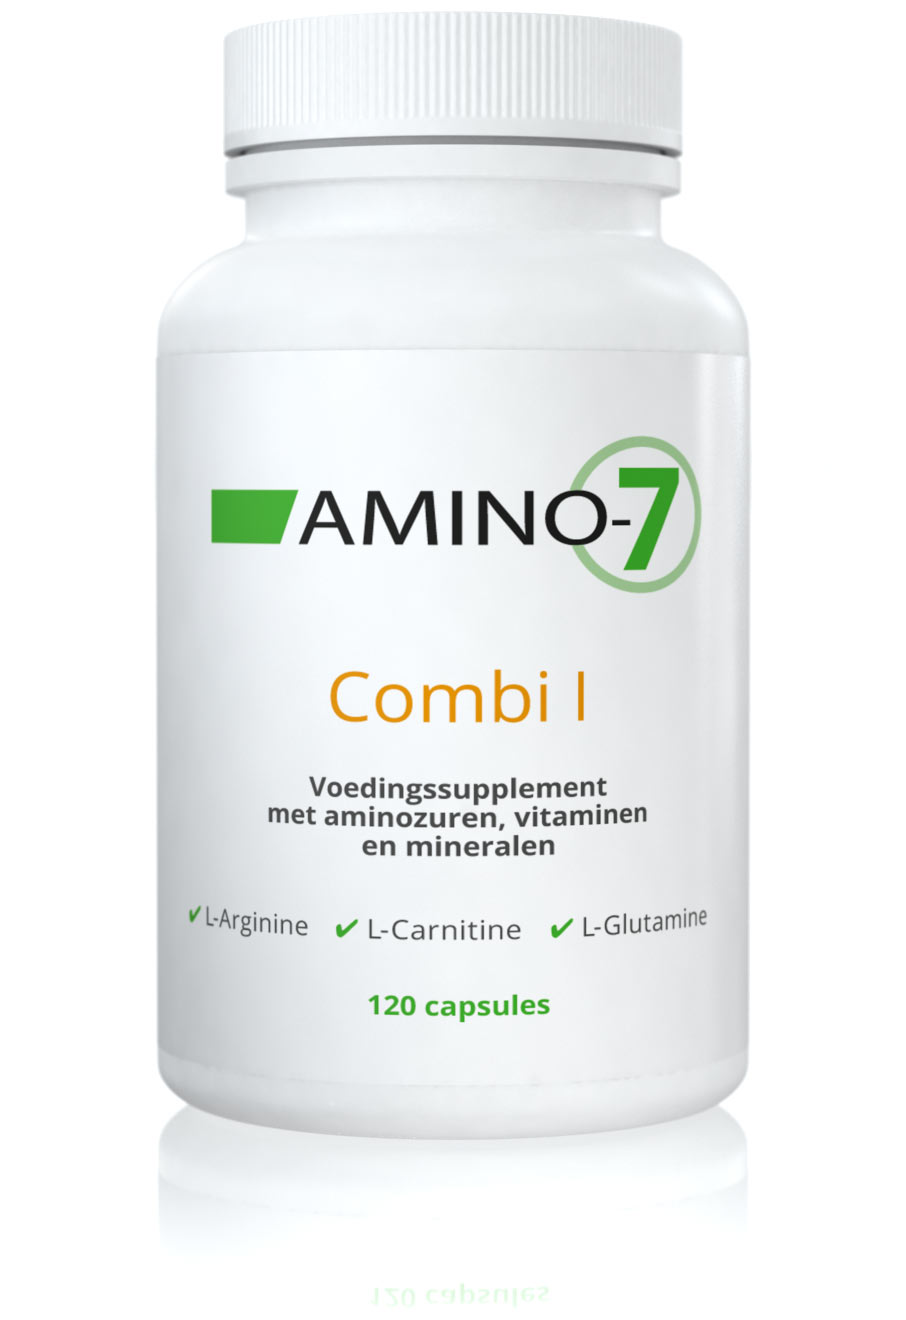 AMINO-7 Combi I